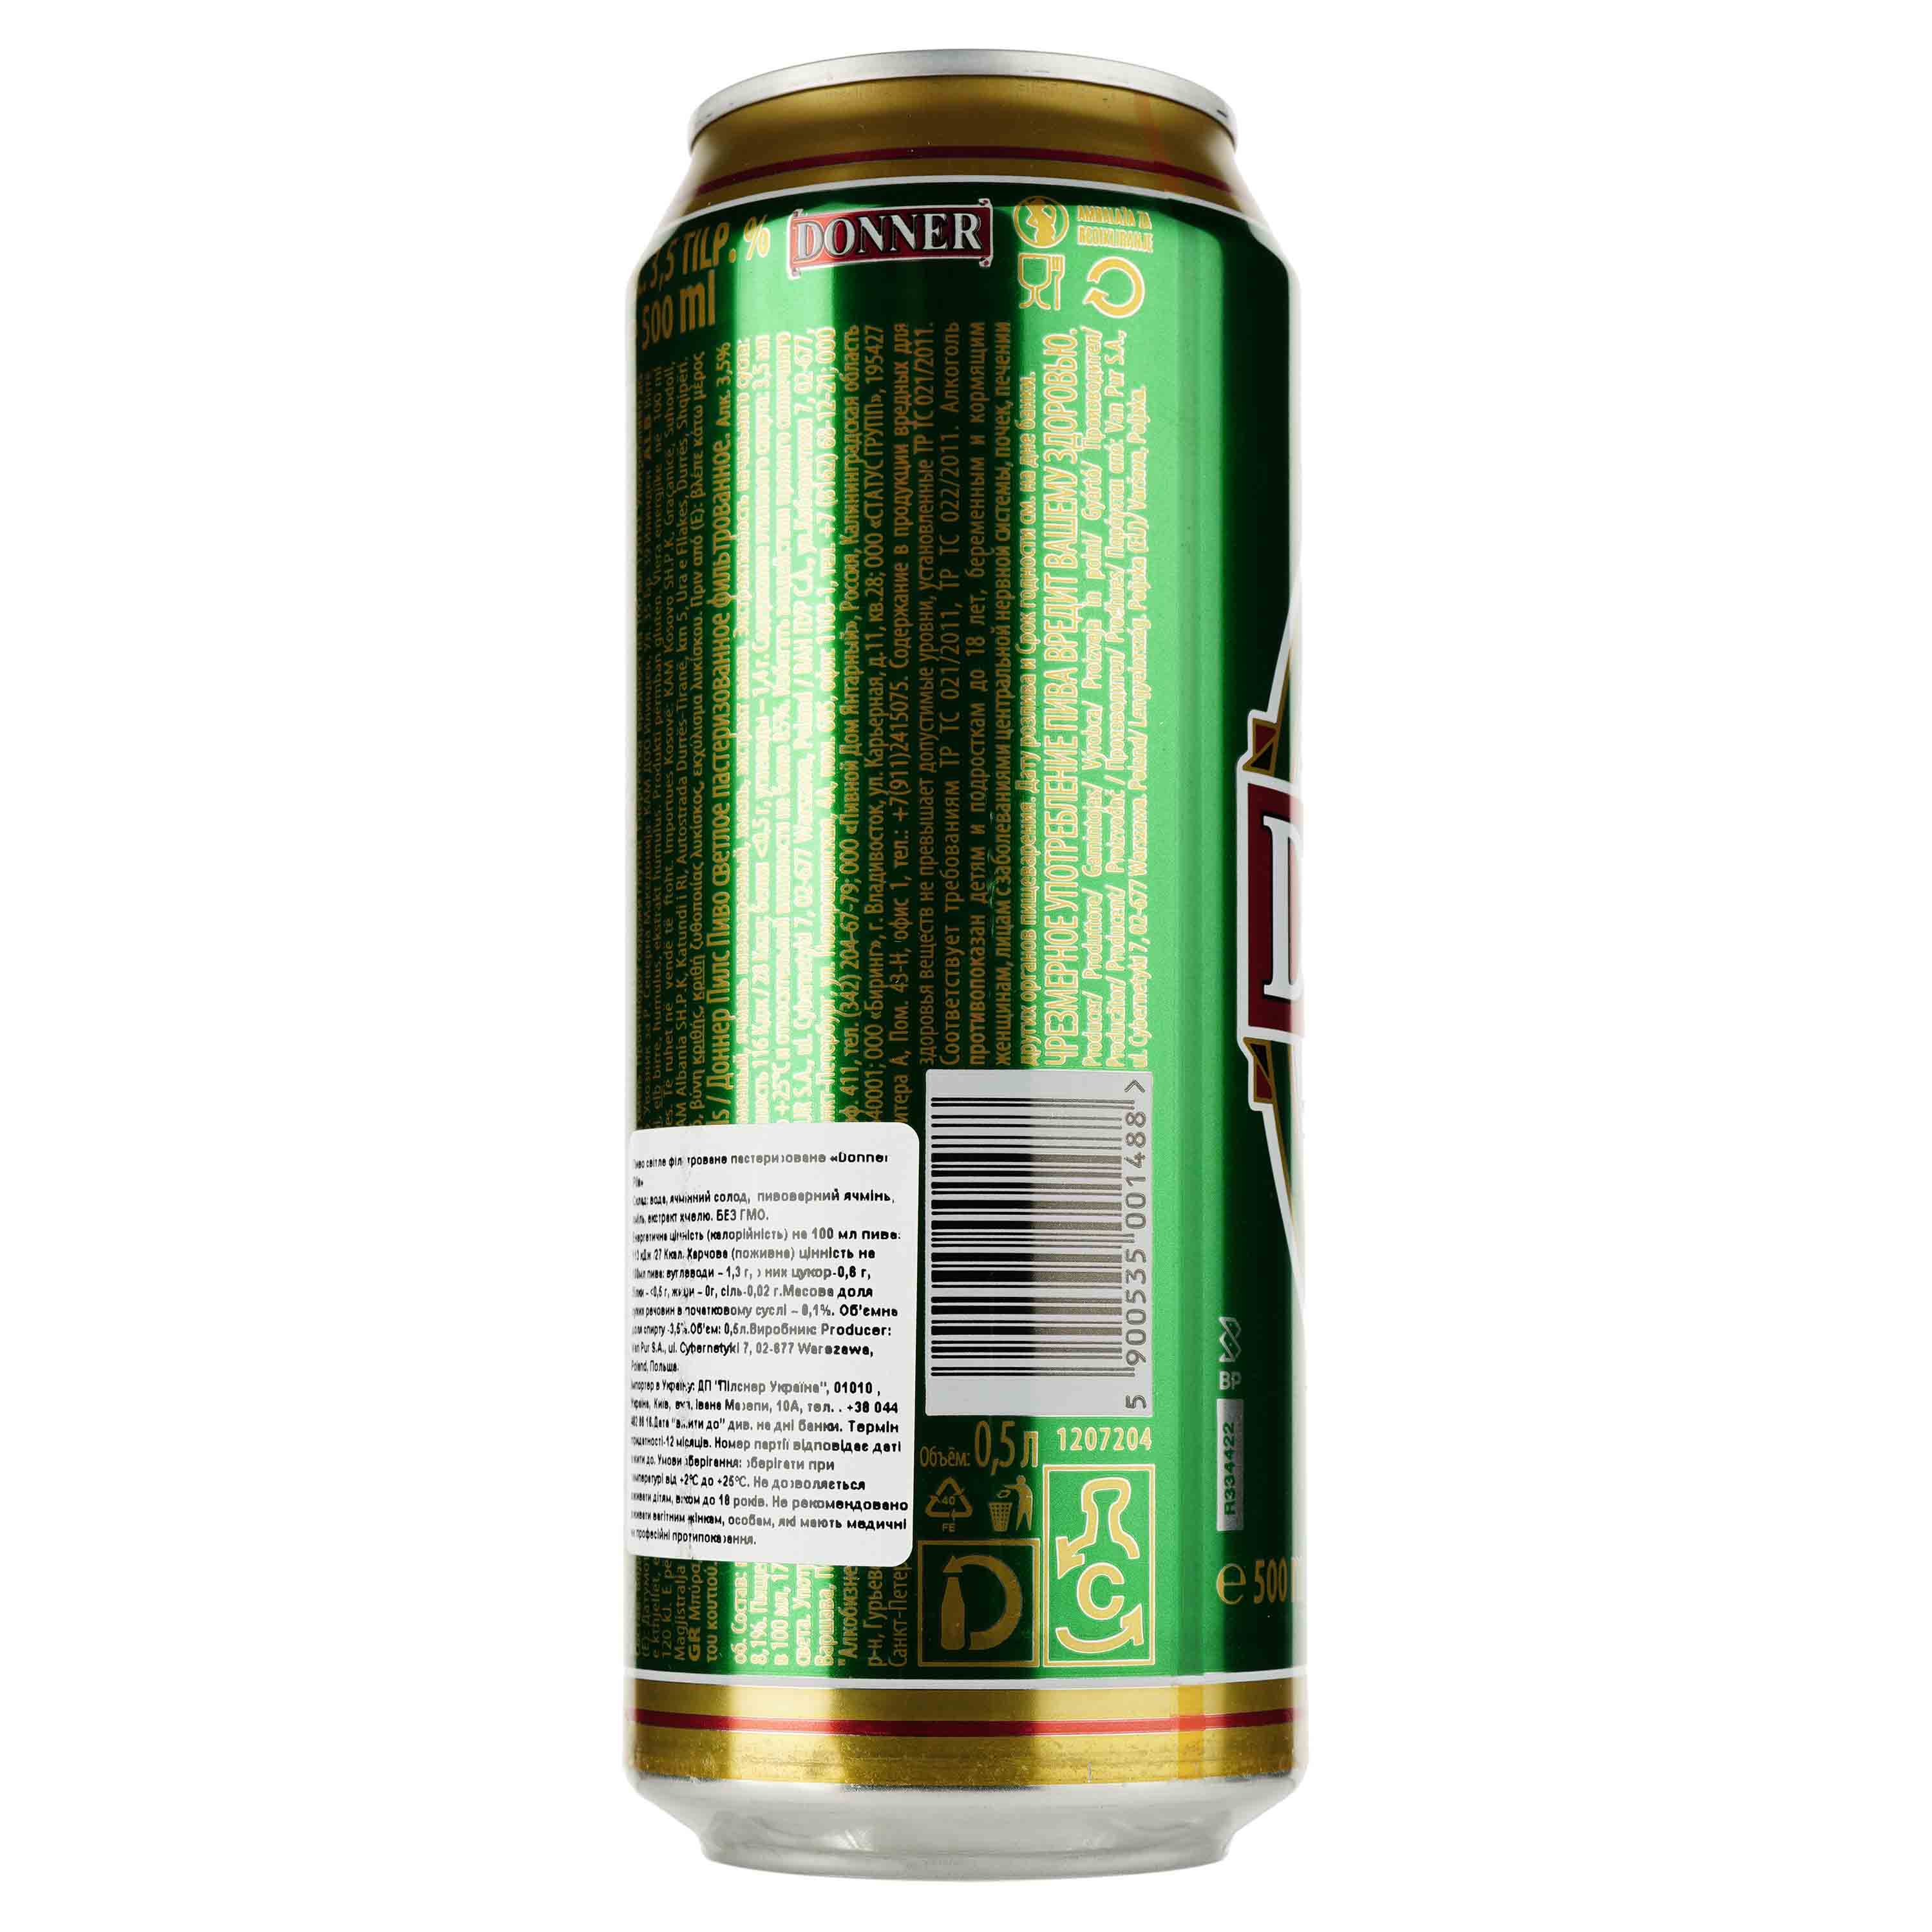 Пиво Donner Pils світле, 3.5%, з/б, 0.5 л - фото 2